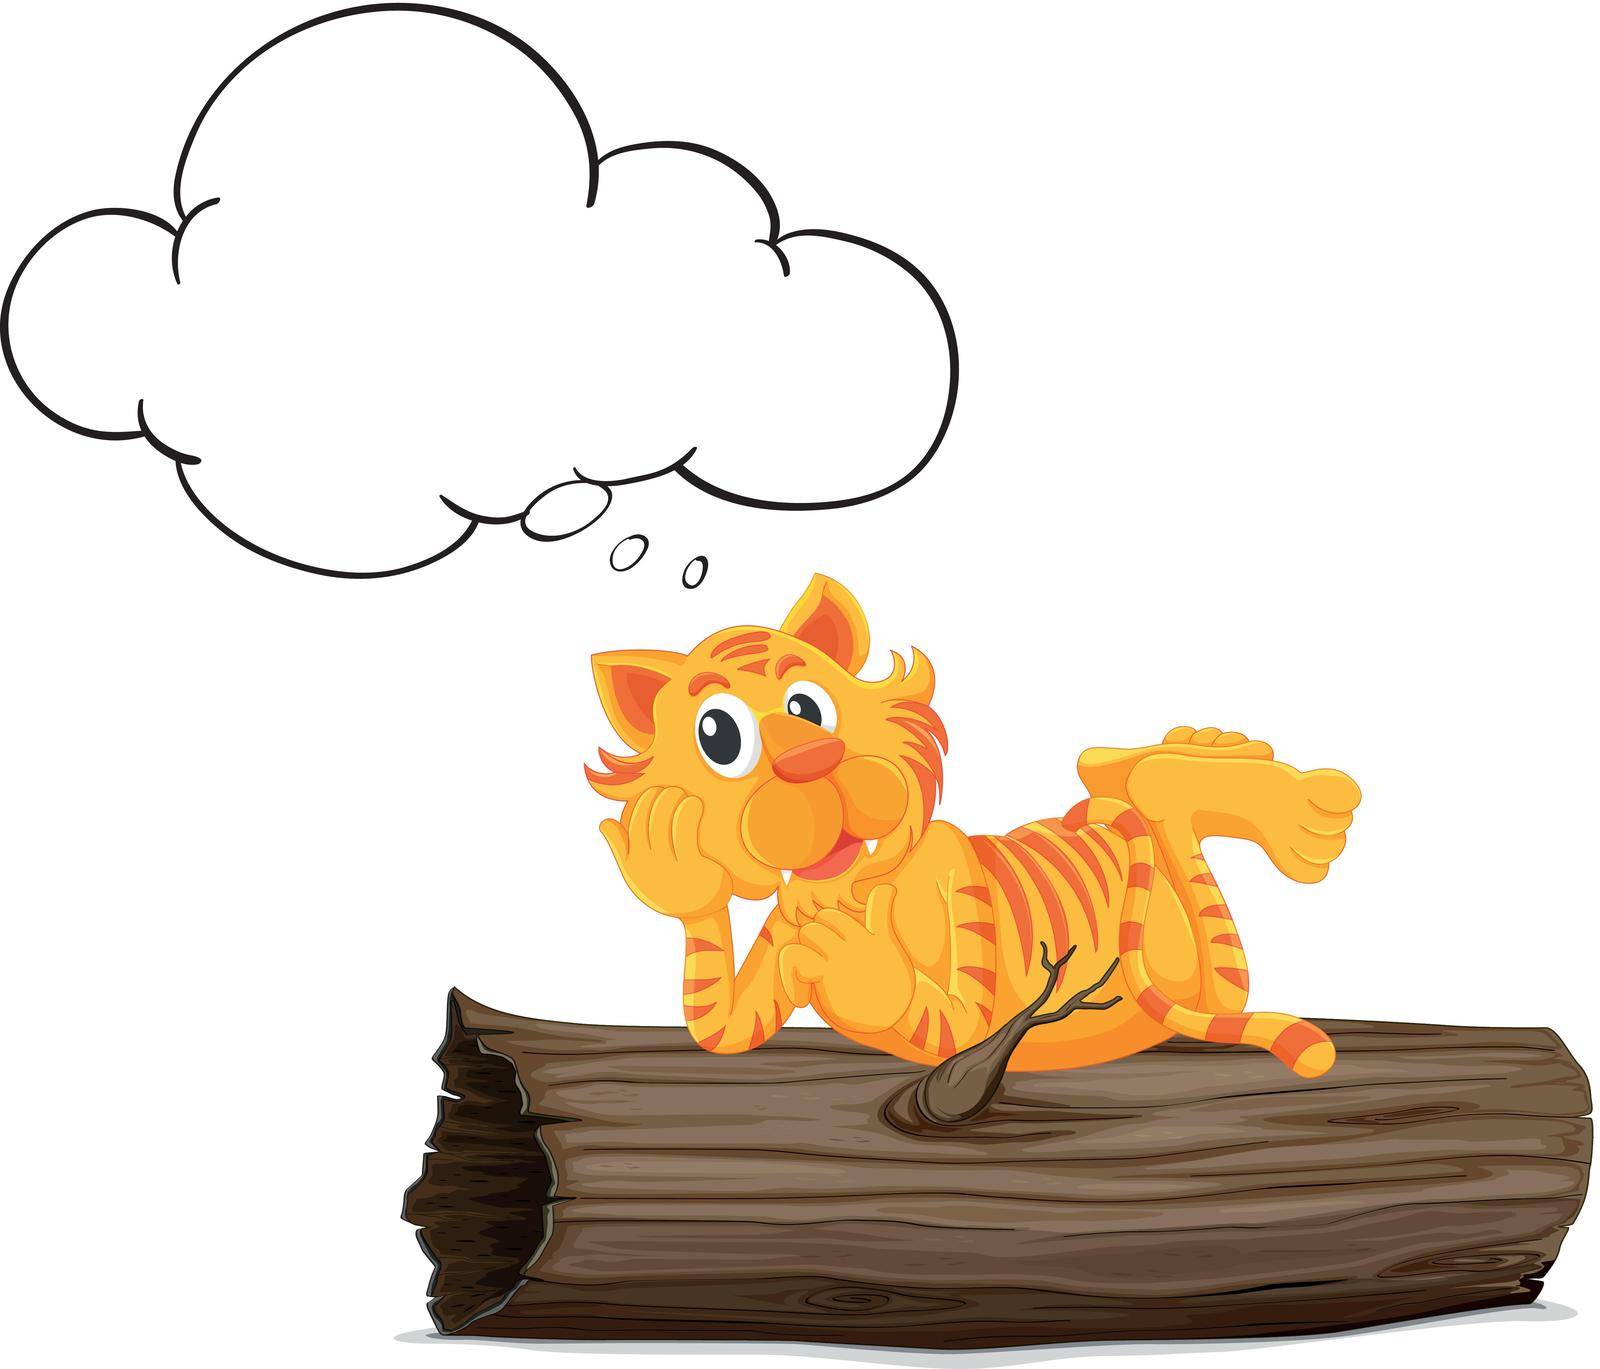 Illustration of a thinking tiger